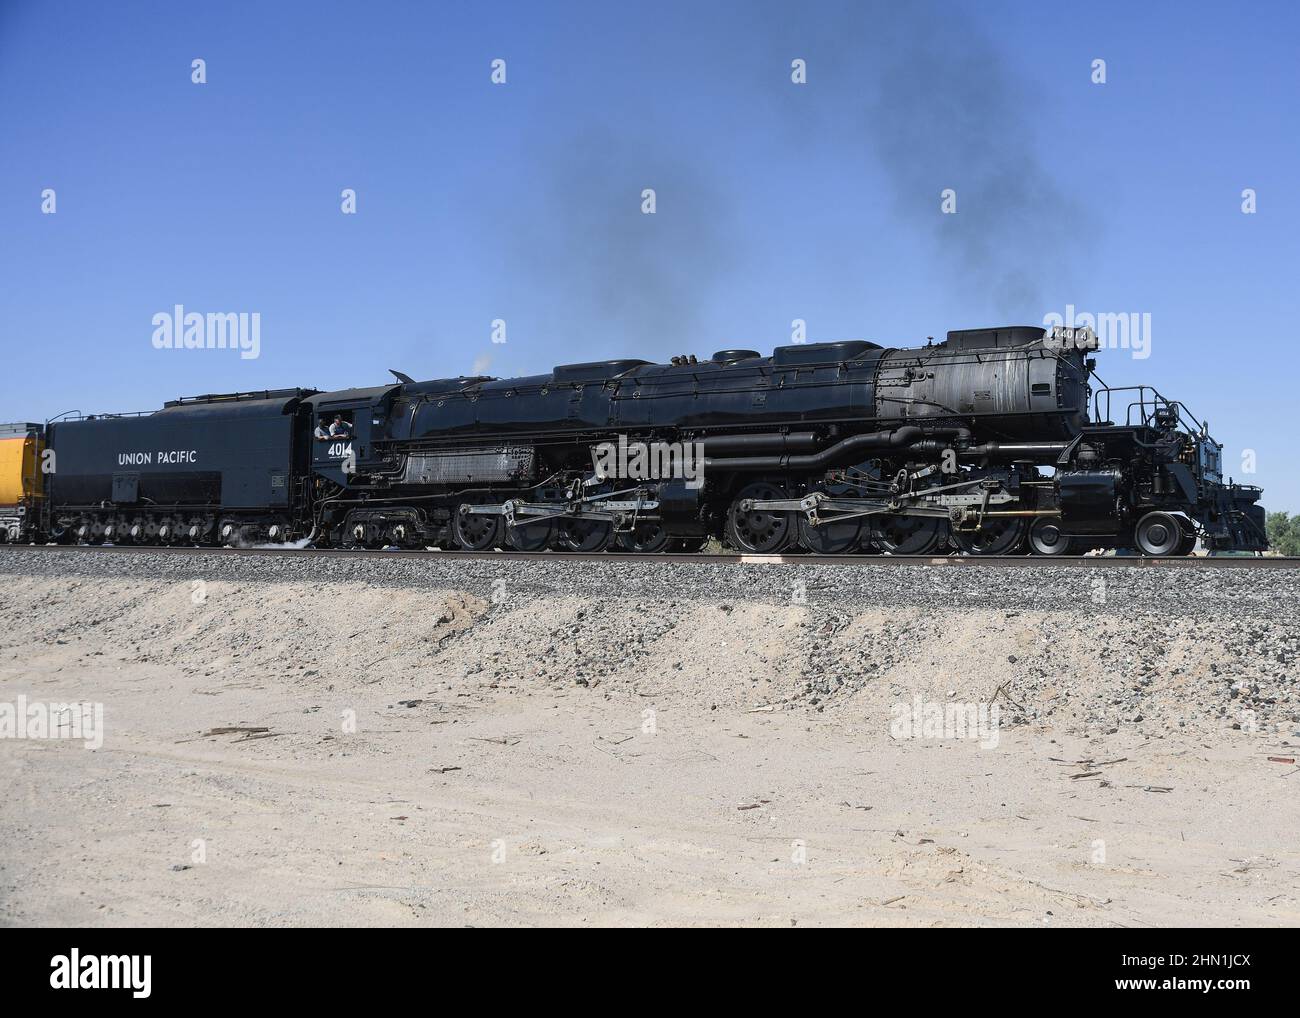 Union Pacific Big Boy 4014 inizia a muoversi a Niland, California, vicino al mare di Salton. Foto Stock